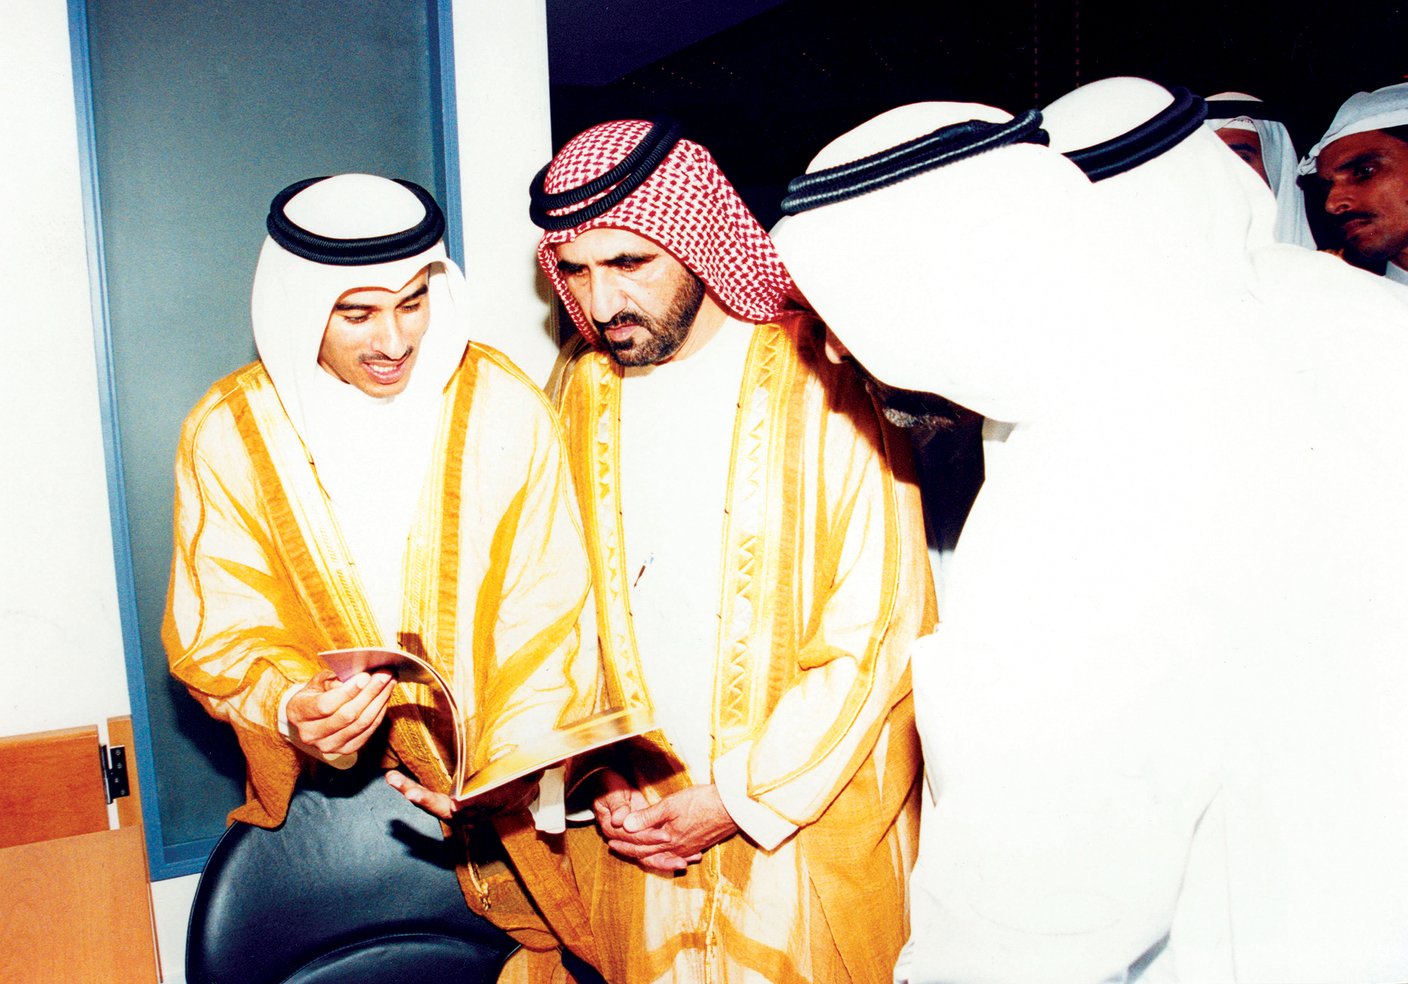 الصورة : محمد بن راشد يستمع إلى شرح من محمد العبار خلال افتتاح سوق دبي عام 2000 | أرشيفية